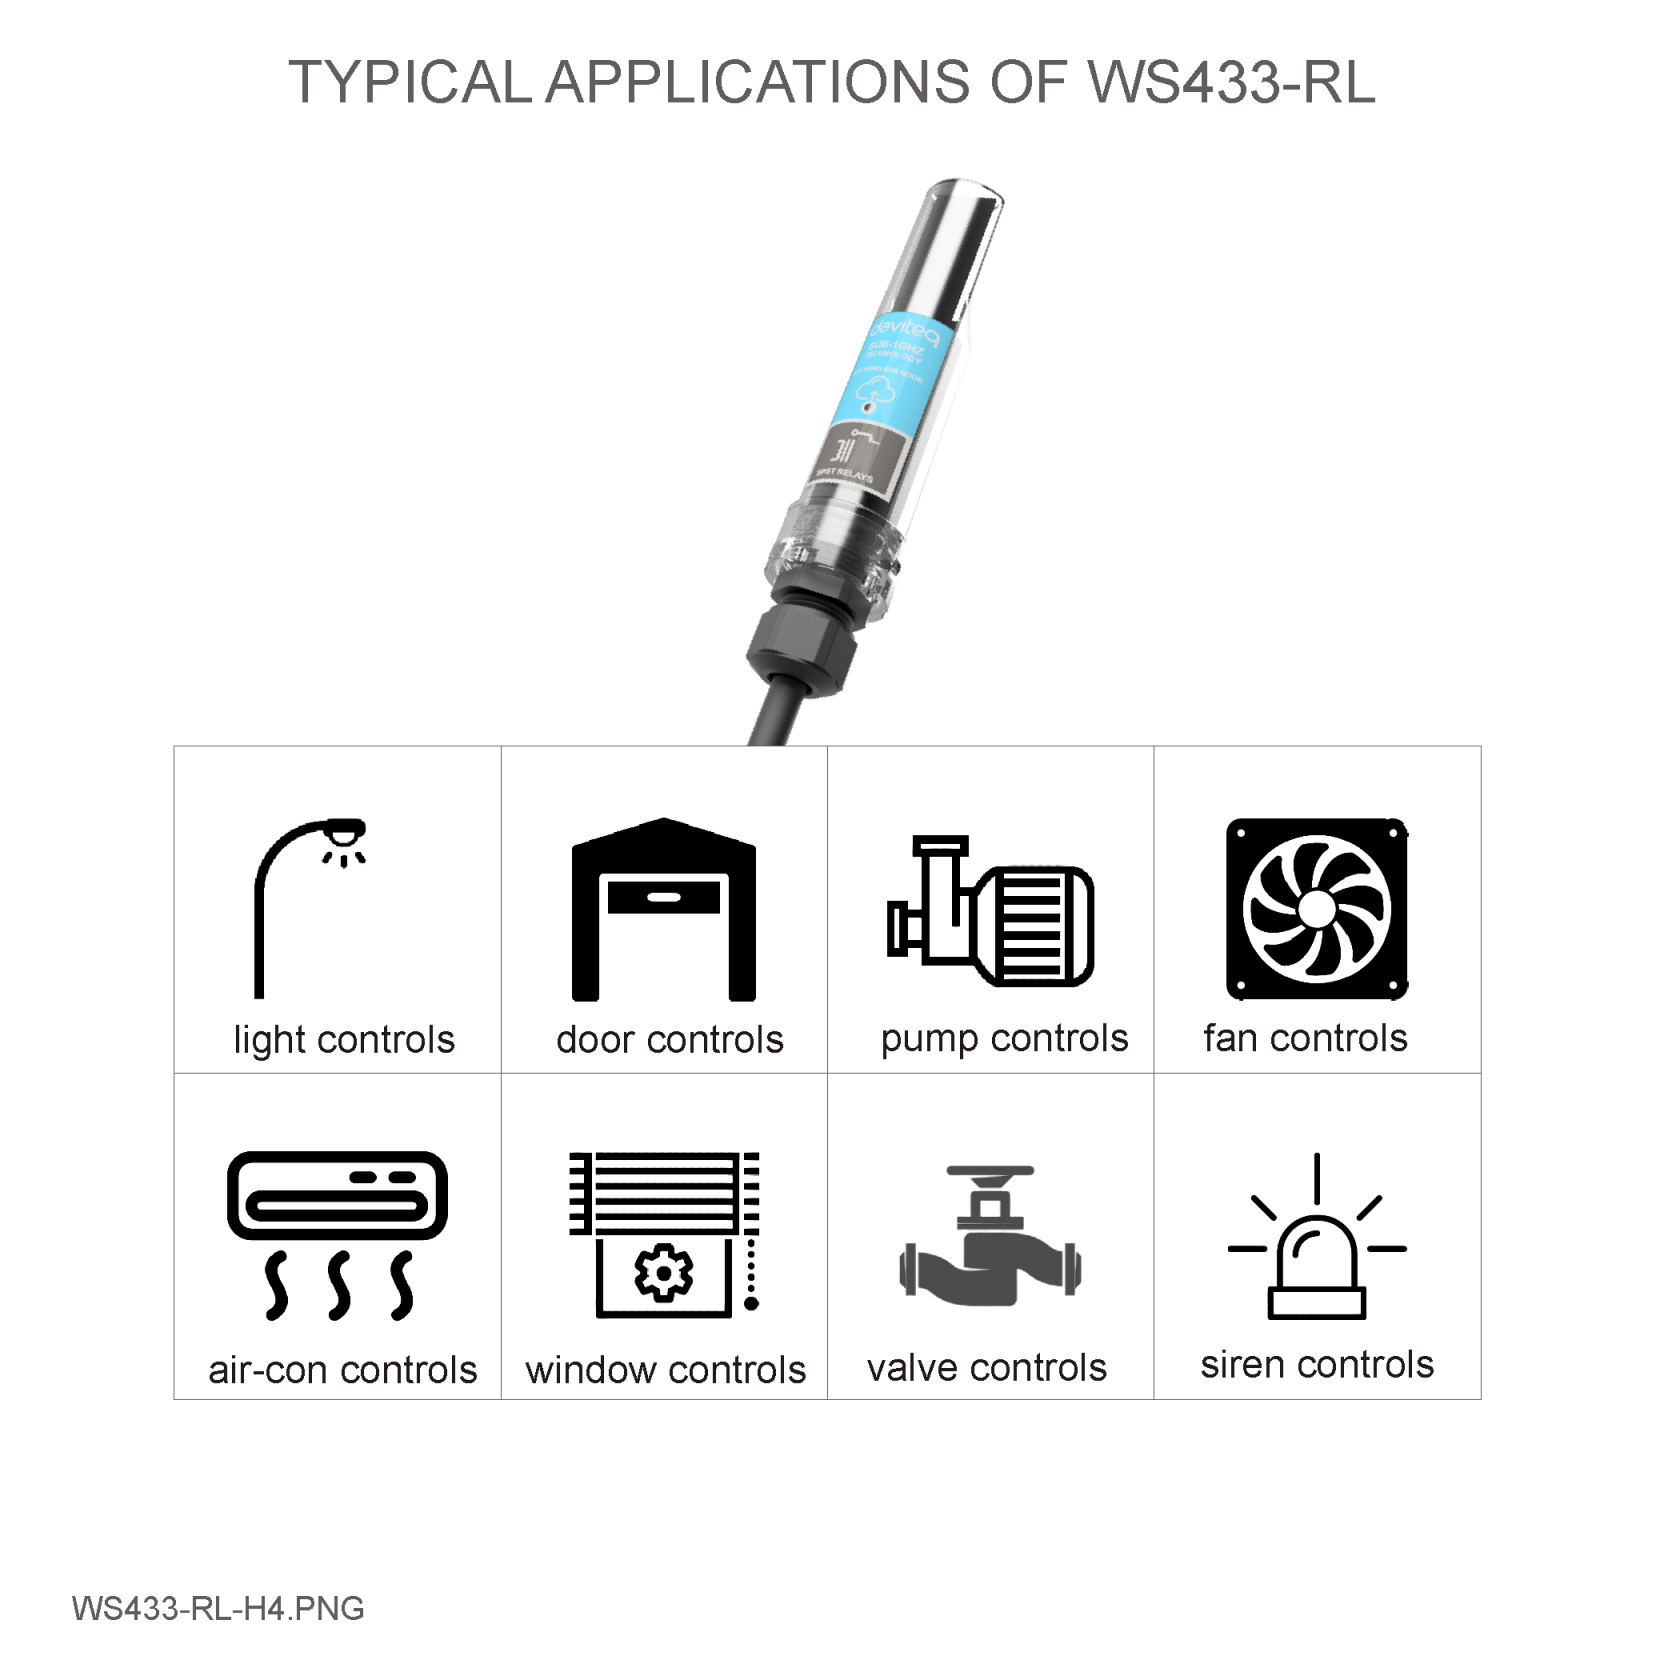 WS433-RL-H4.png